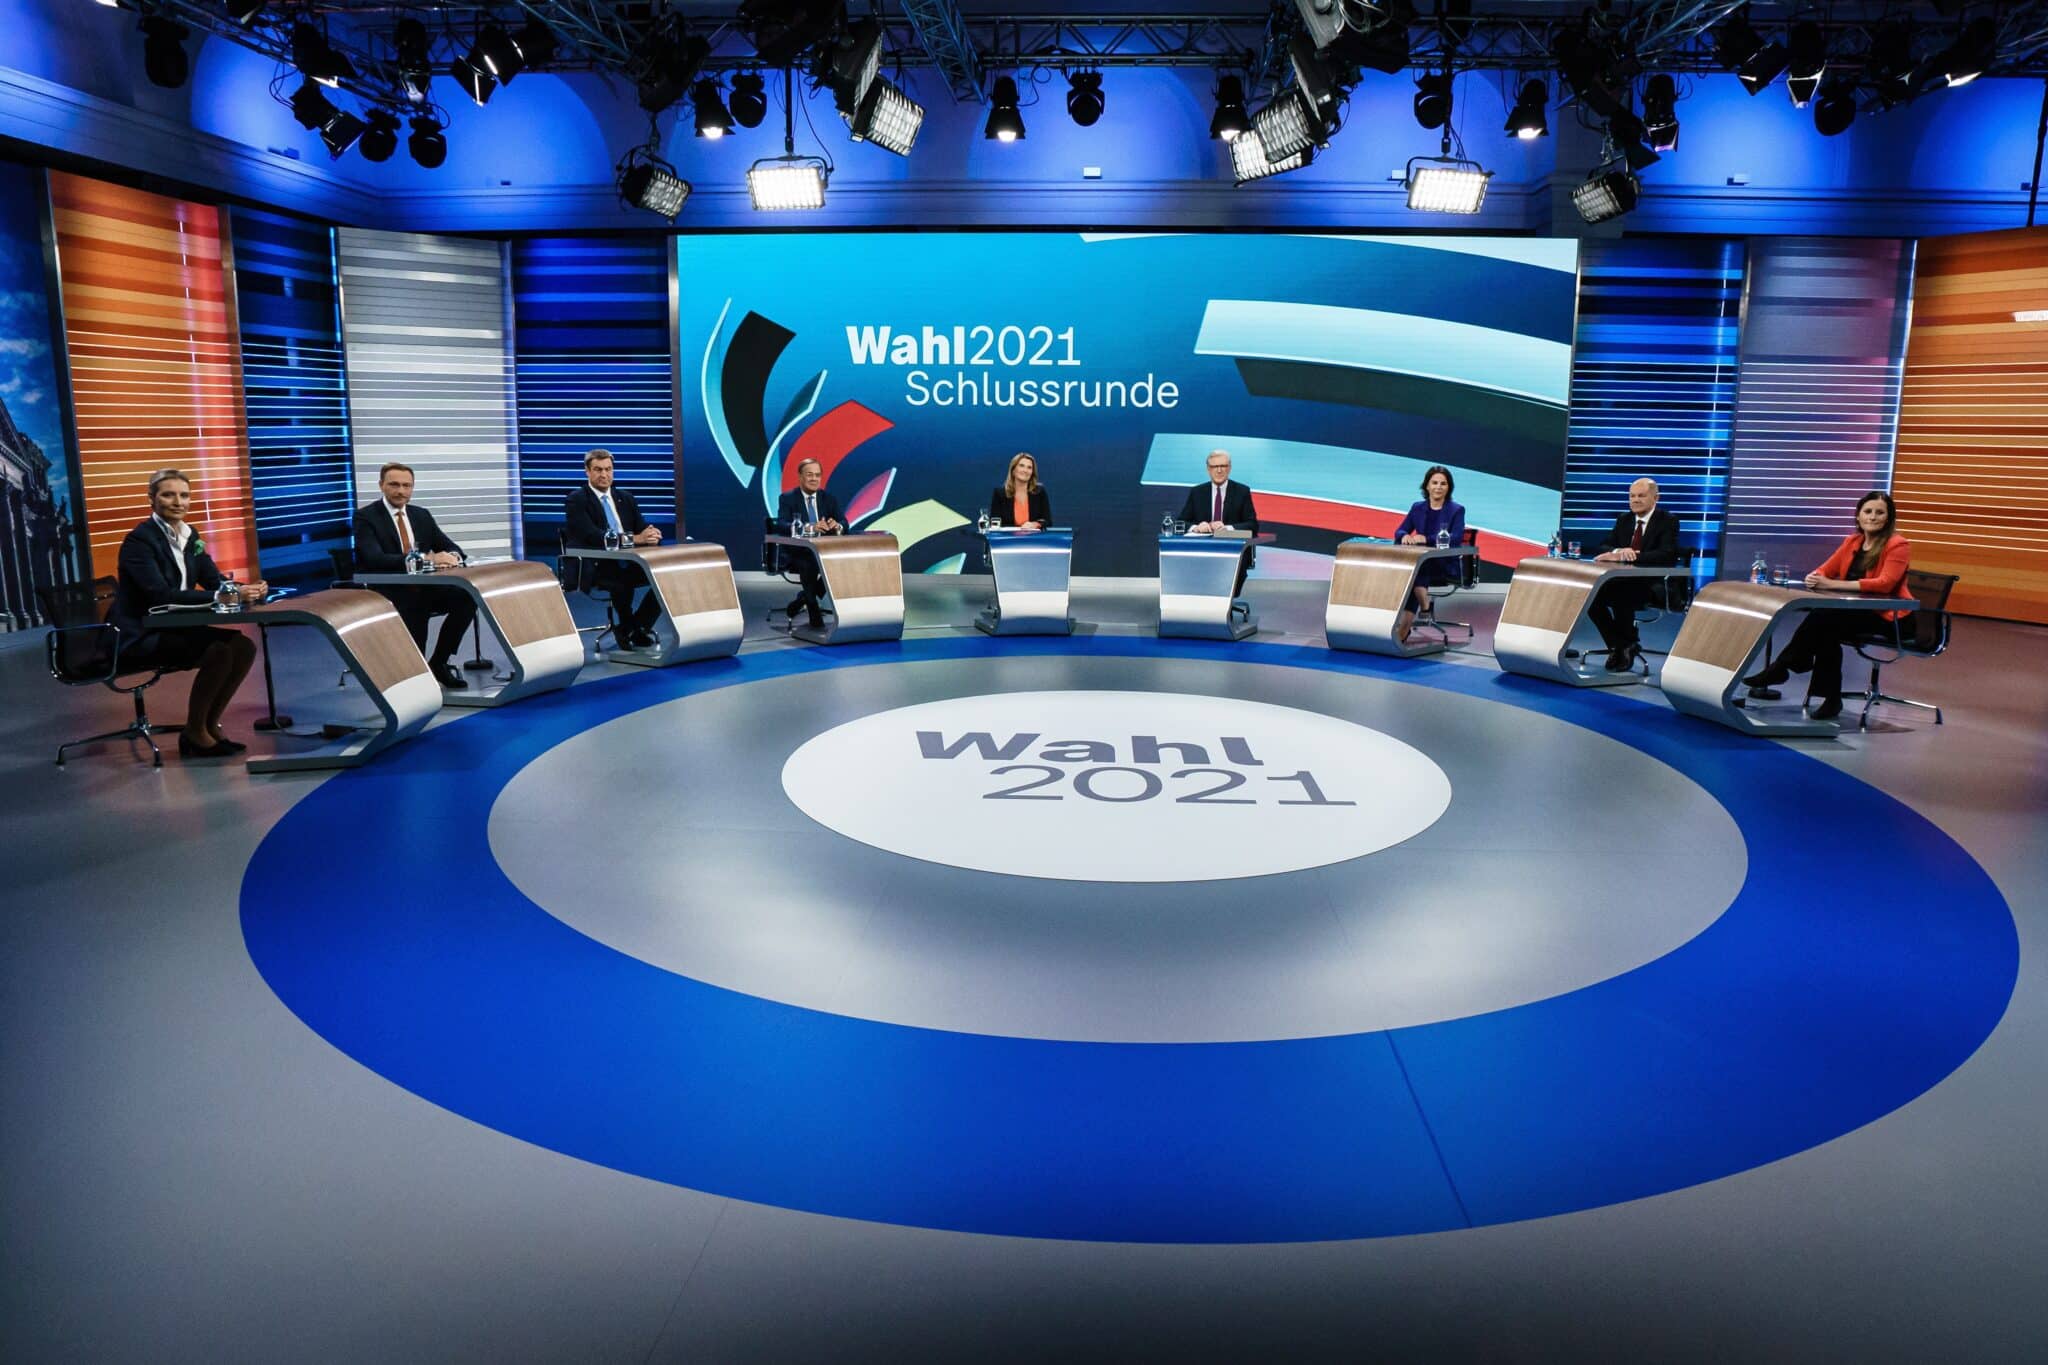 El último debate con siete candidatos en las elecciones alemanas